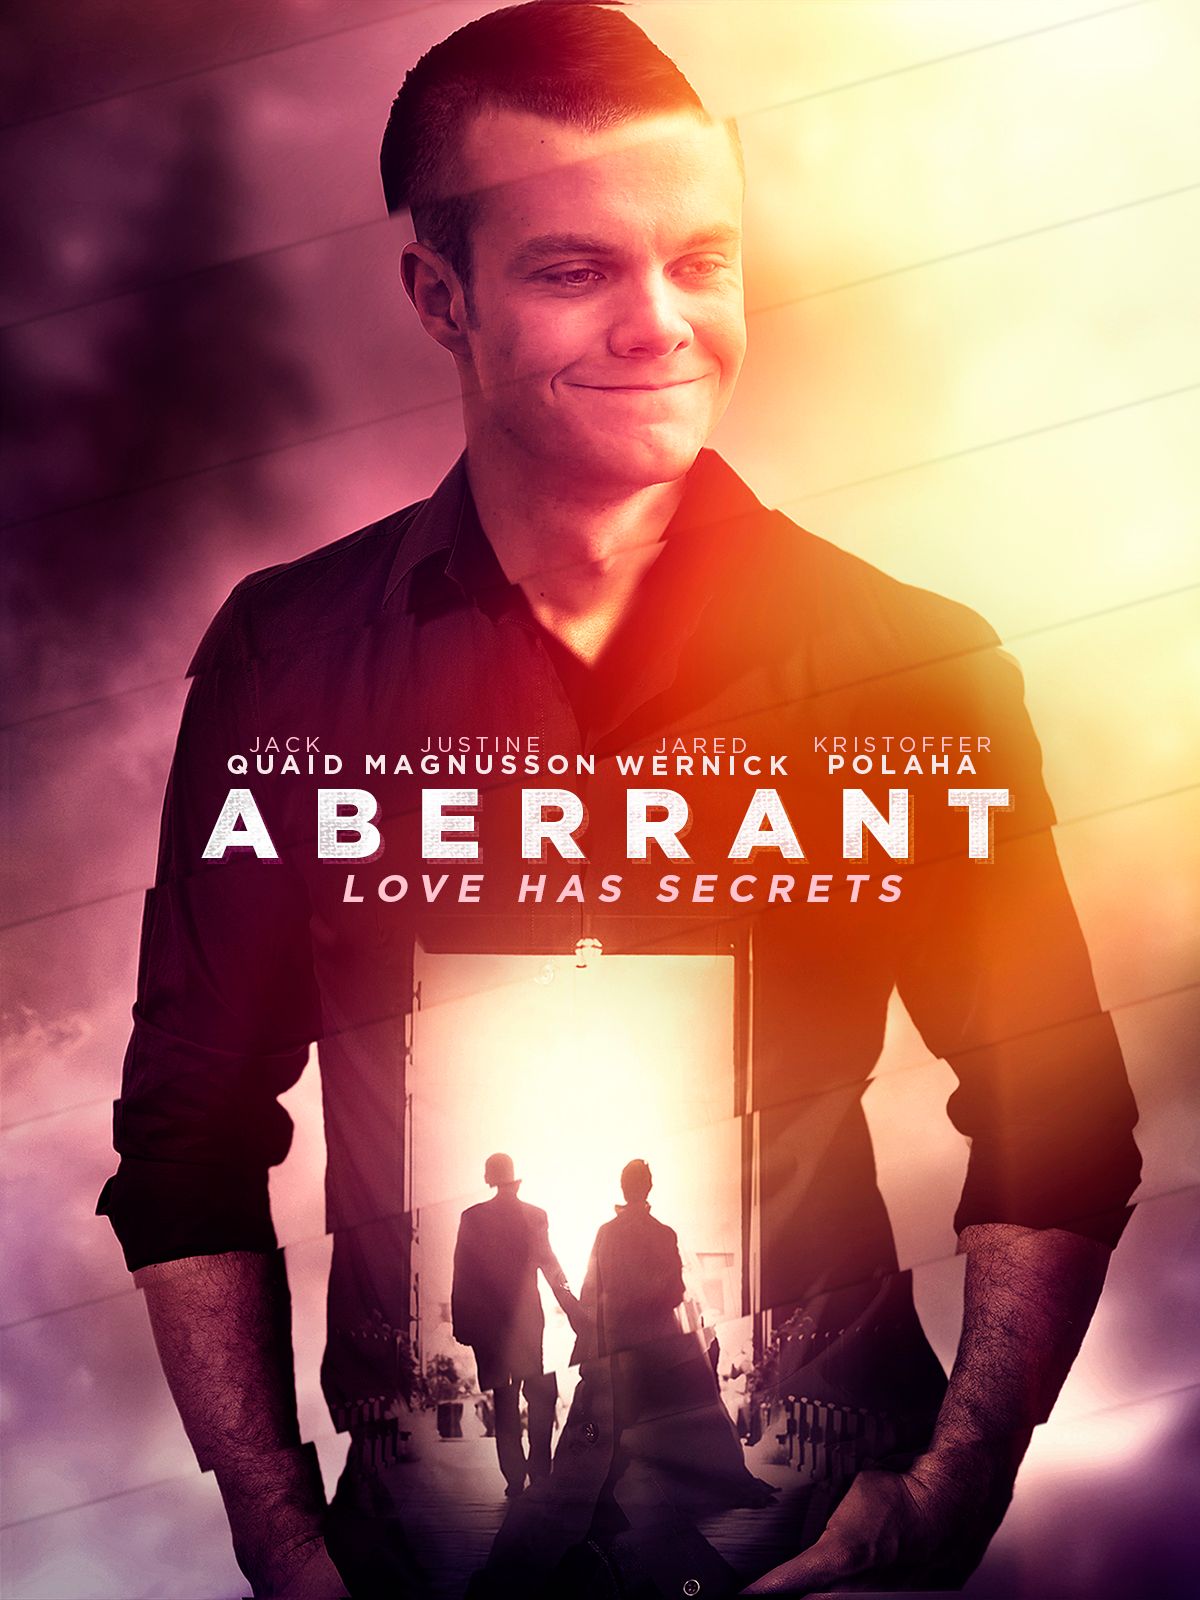 Keyart for the movie Aberrant